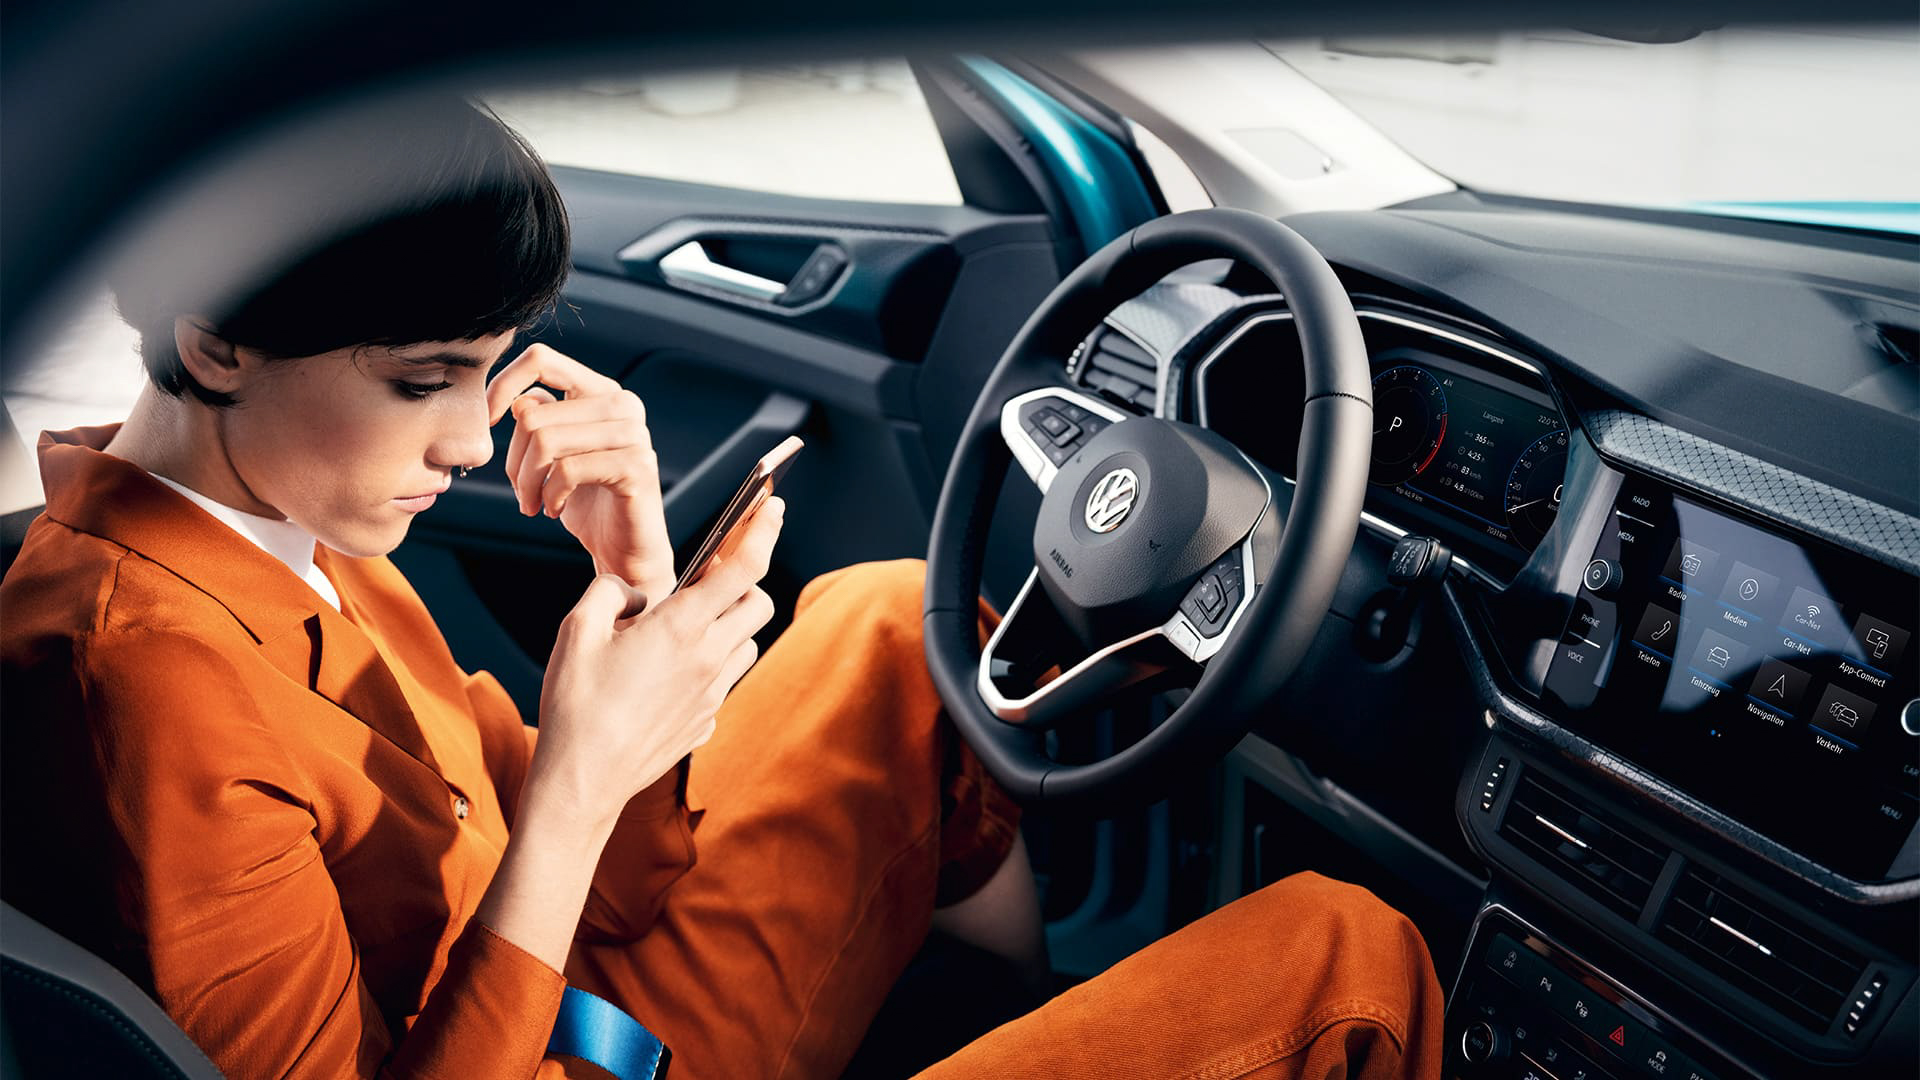 台灣福斯汽車 My Volkswagen App 增列「線上預約保養」與「優惠劵獎勵服務」功能